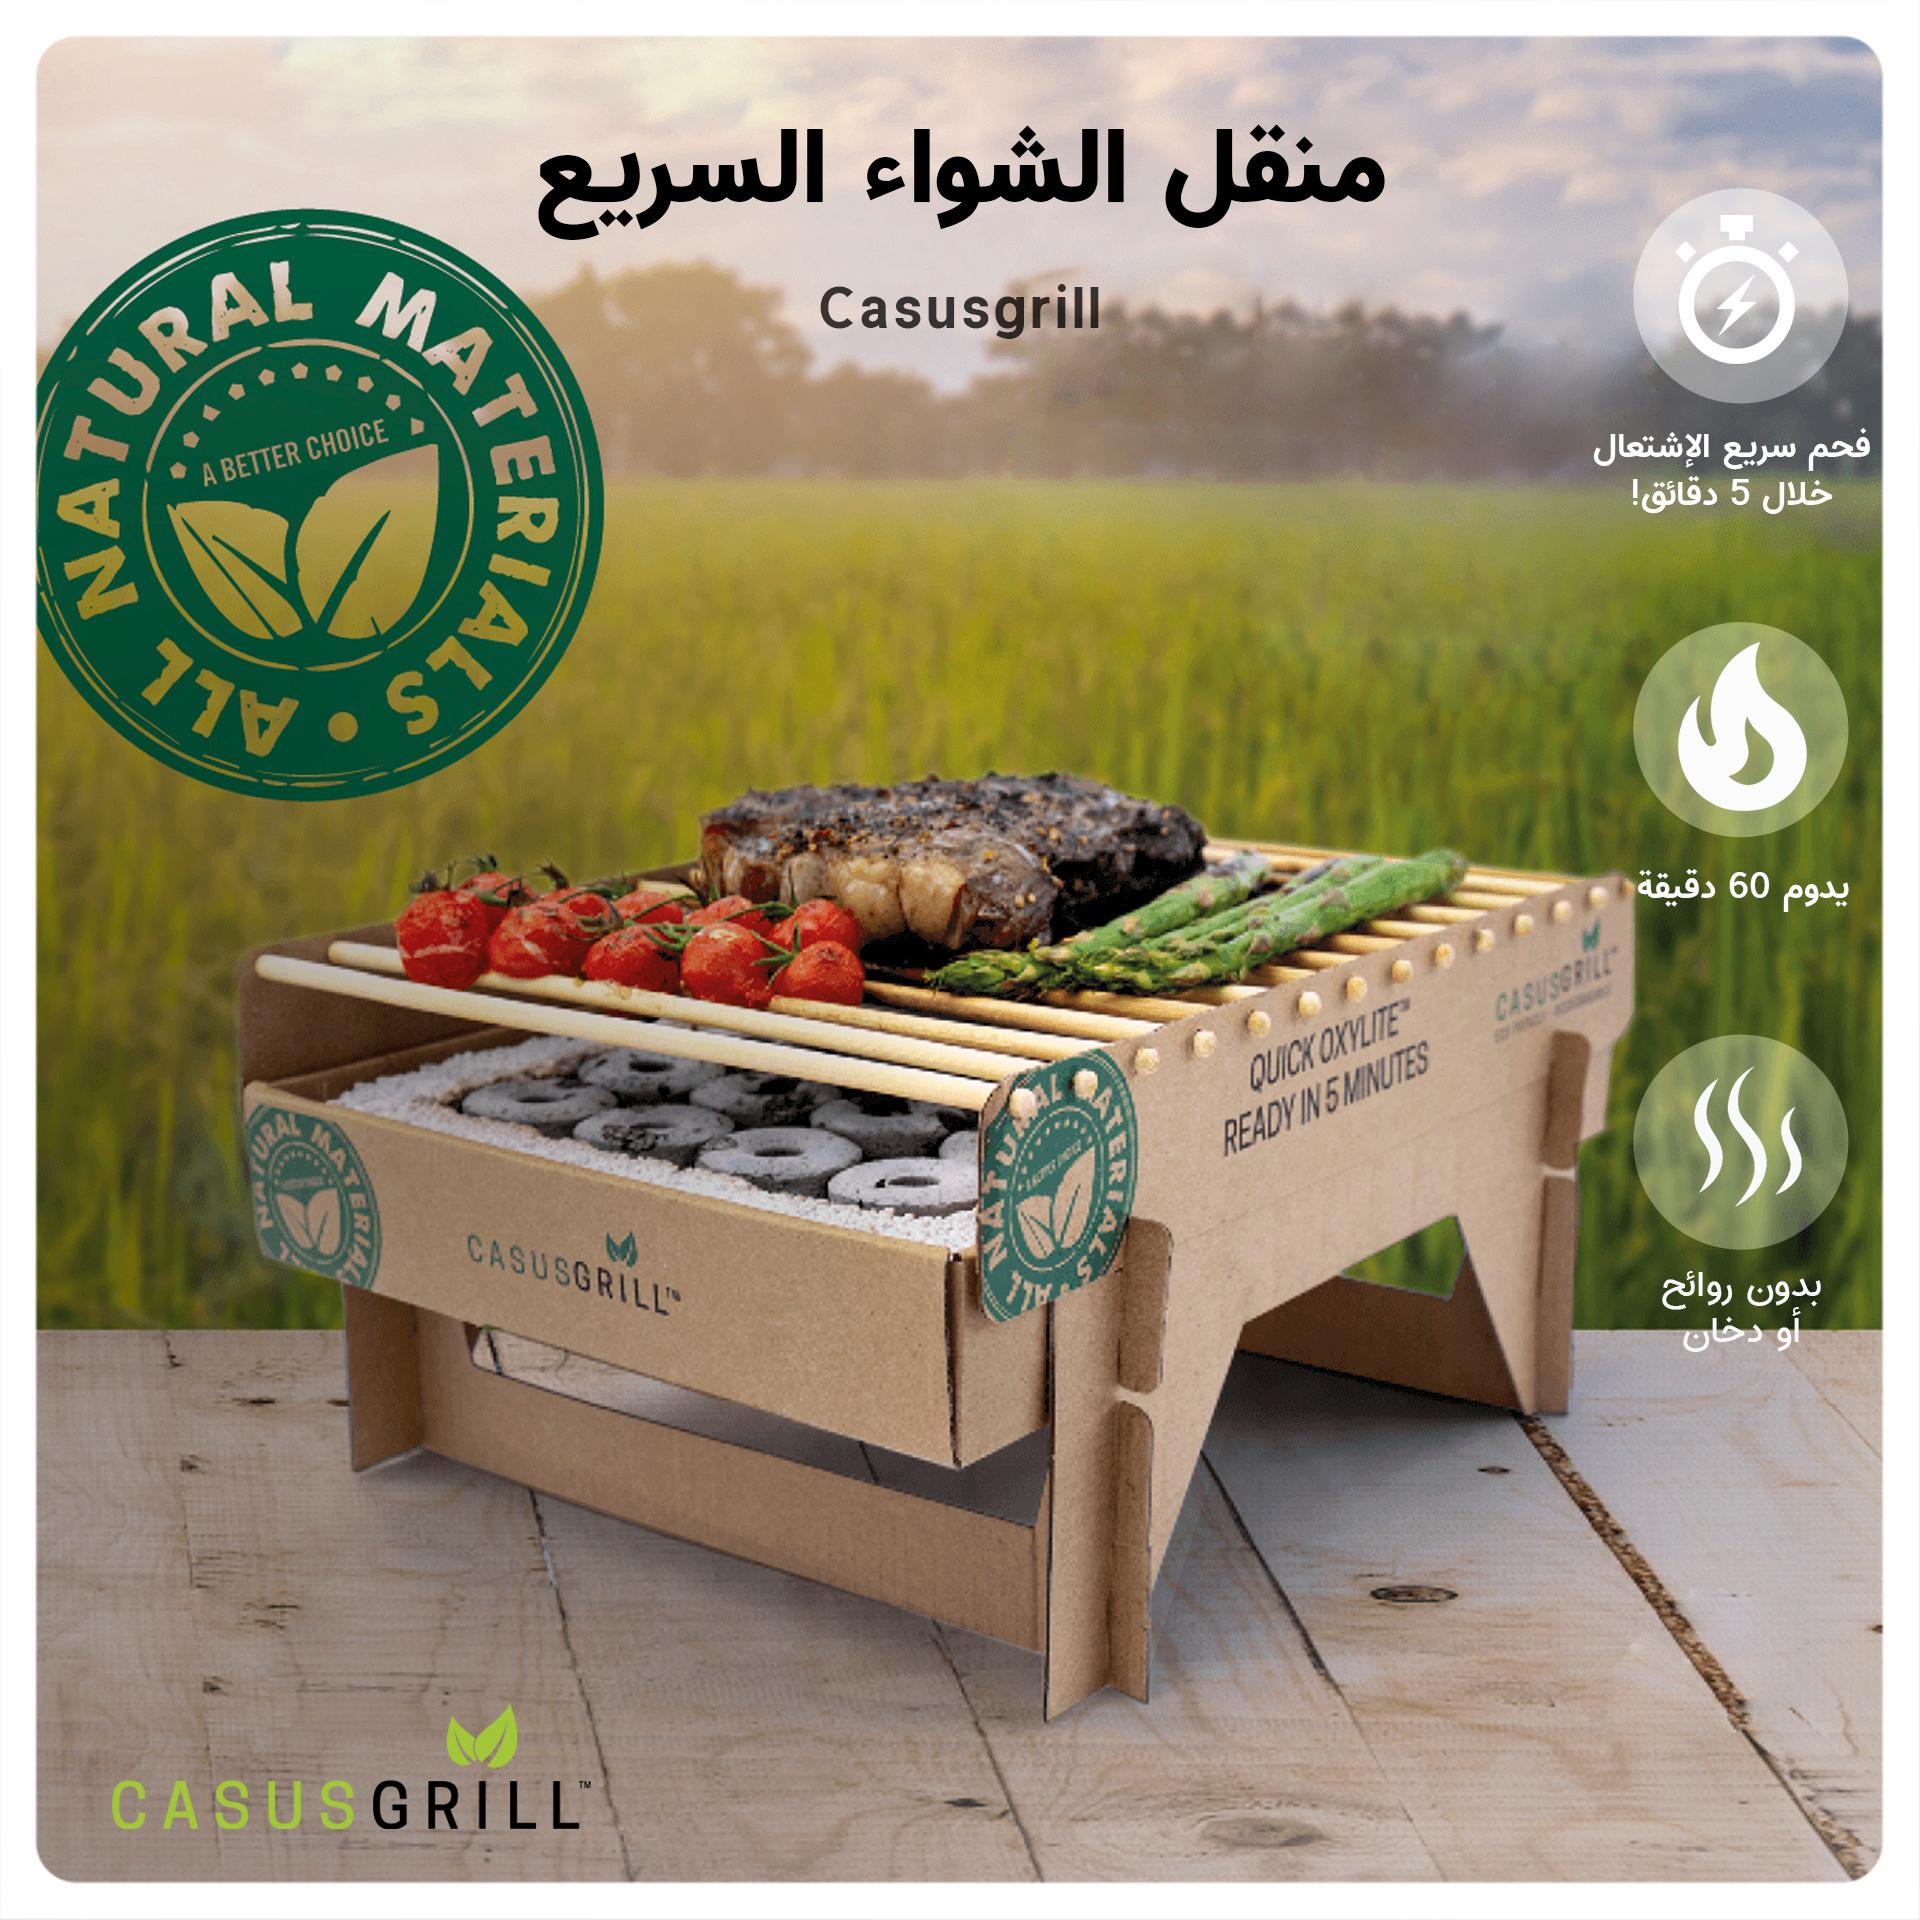 شوايه فوريه جاهزه متنقلة كاكسوس جريل CasusGrill Portable Instant Biodegradable Barbecue Grill